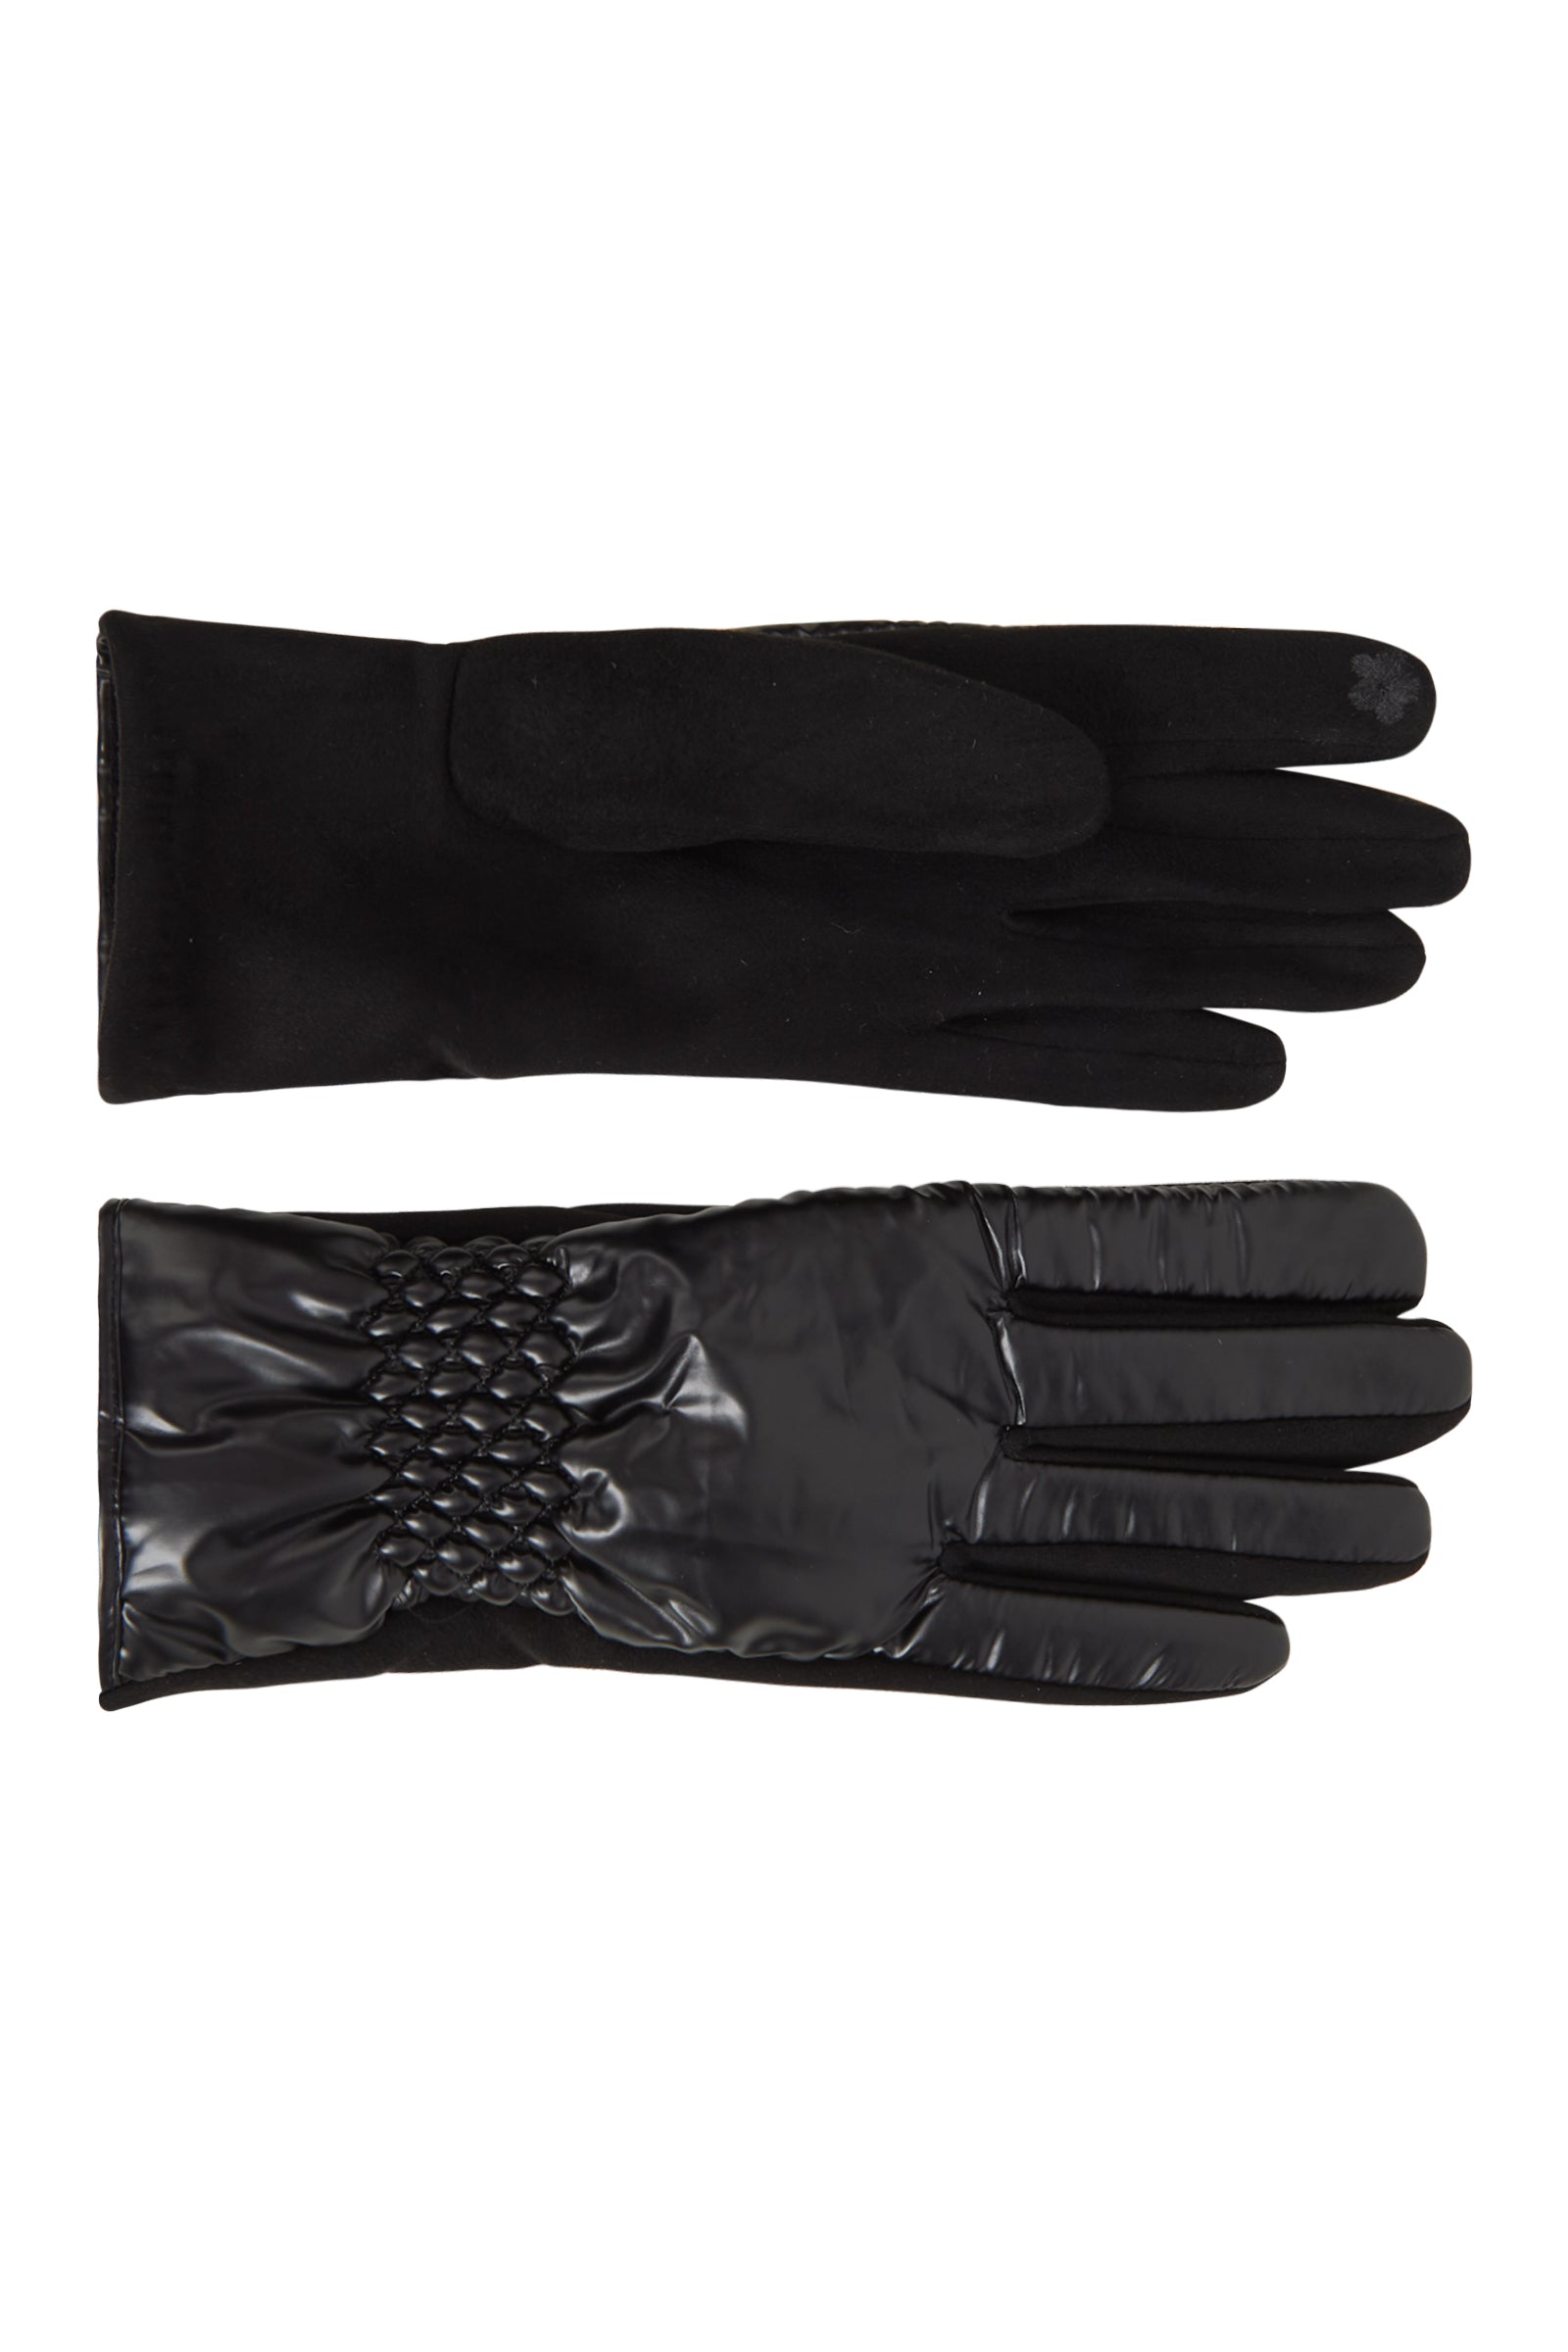 Nawi Glove - Carbon - eb&ive Glove